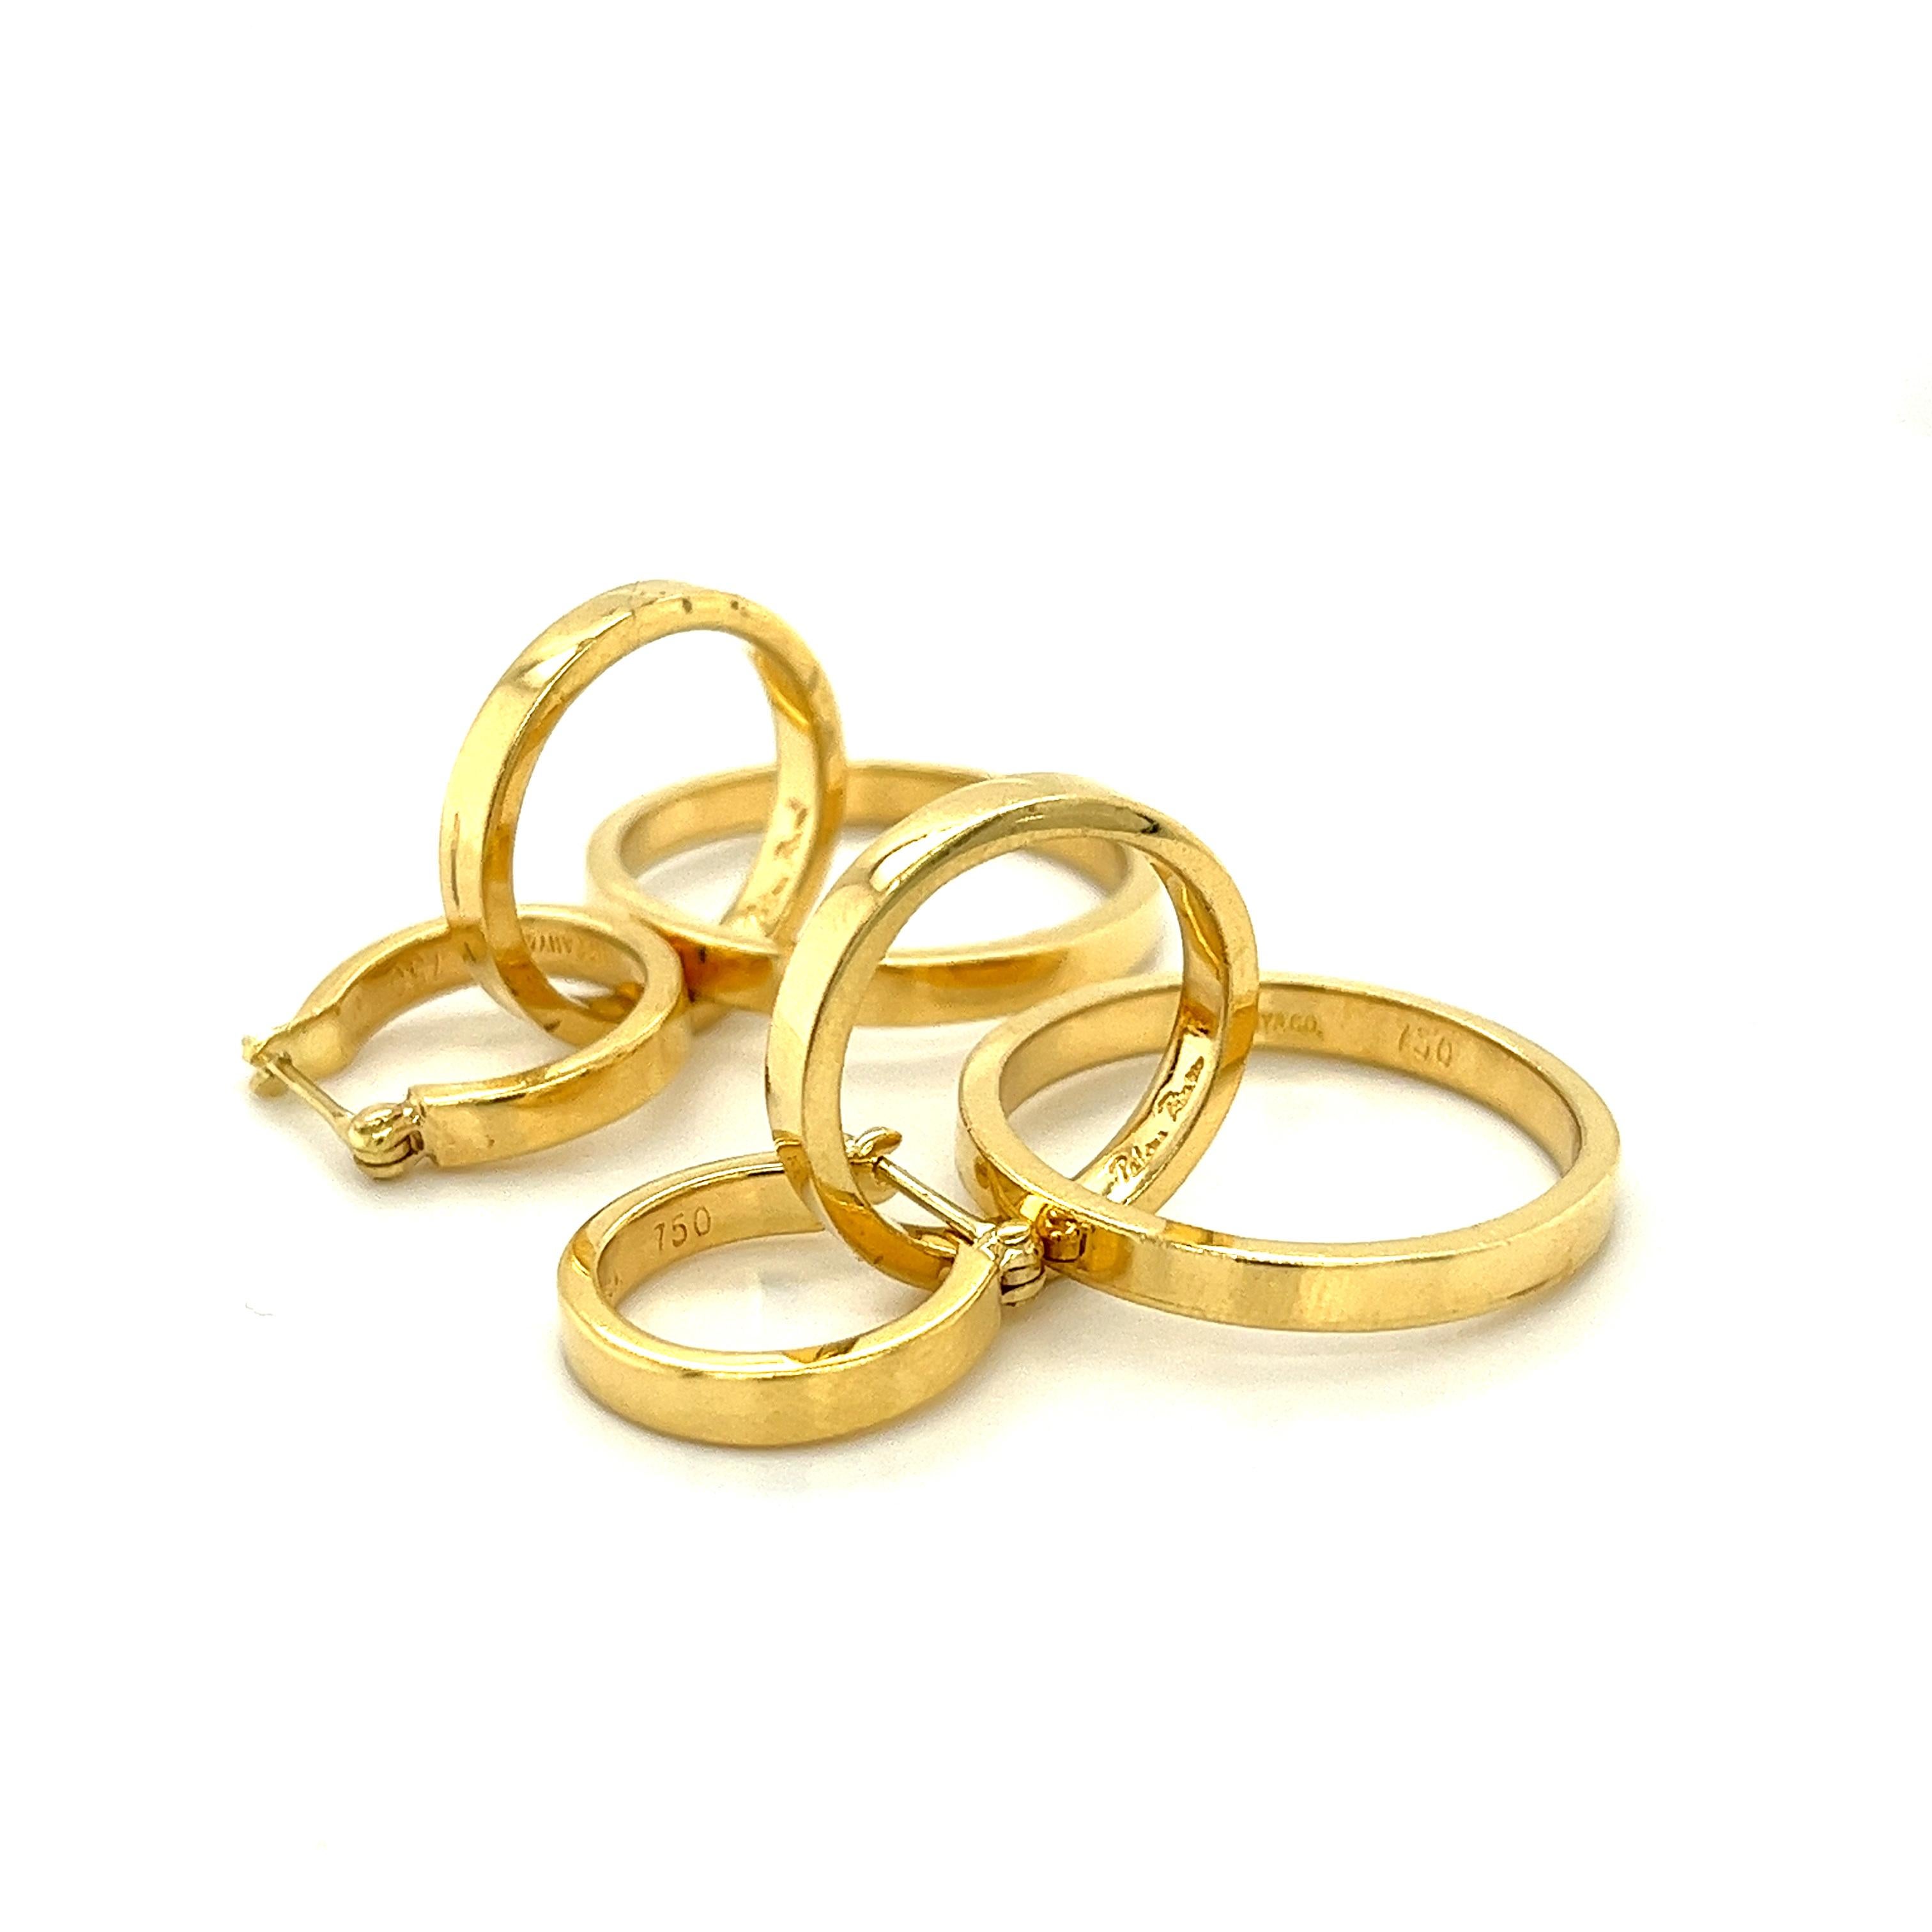 3 ring gold hoop earrings